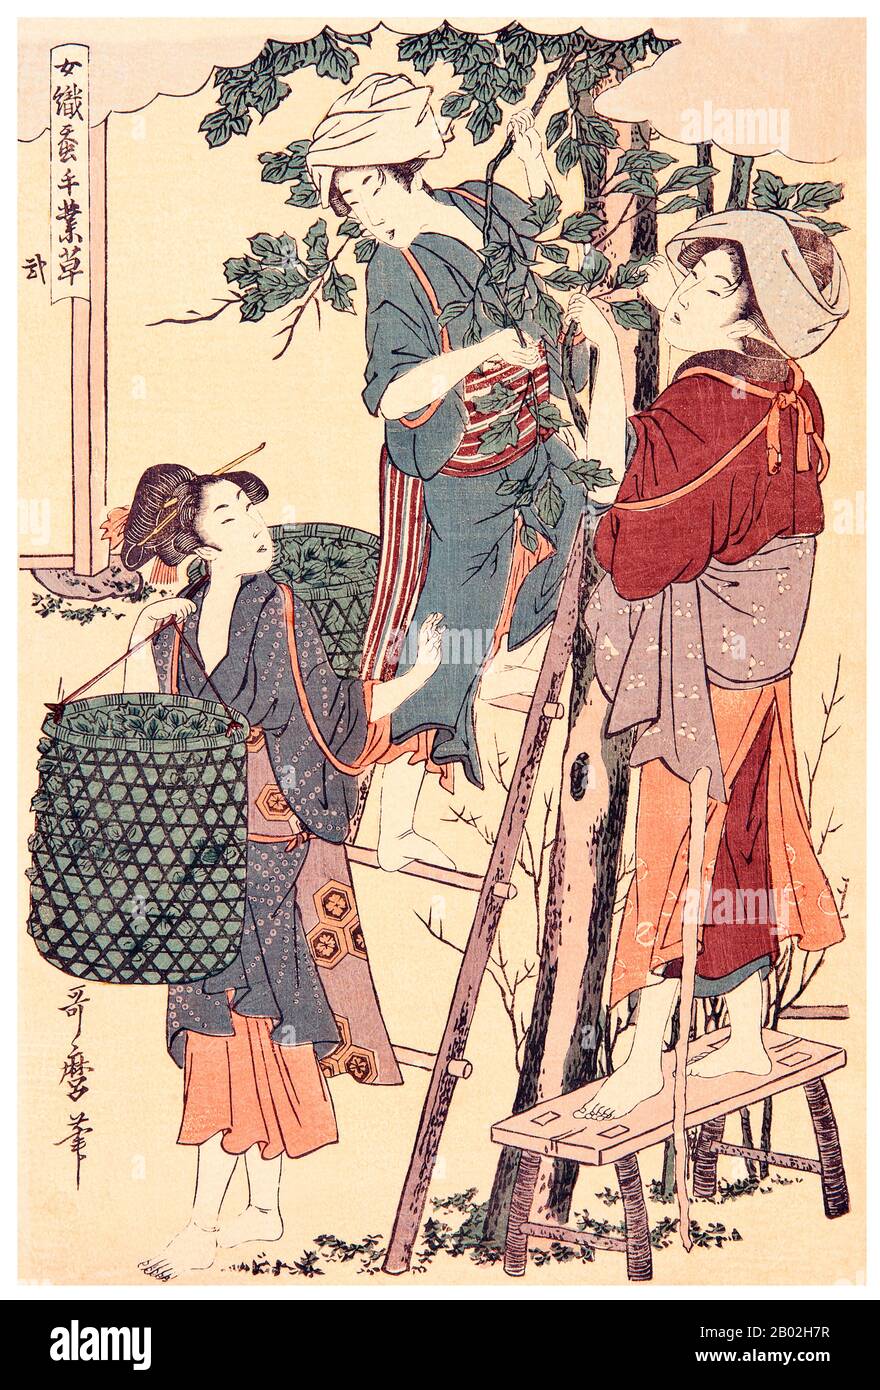 2. "Cueillir des feuilles de mûrier", représentant une femme sur un stand et une femme sur une échelle cueillant des feuilles de mûrier, une autre femme les ramassant dans un panier. Kitagawa Utamaro (env. 1753 - 31 octobre 1806) était un peintre et graveur japonais, considéré comme l'un des plus grands artistes de gravures de bois (ukiyo-e). Il est surtout connu pour ses études magistralement composées de femmes, connues sous le nom de bijinga. Il a également produit des études sur la nature, notamment des livres illustrés d'insectes. Banque D'Images